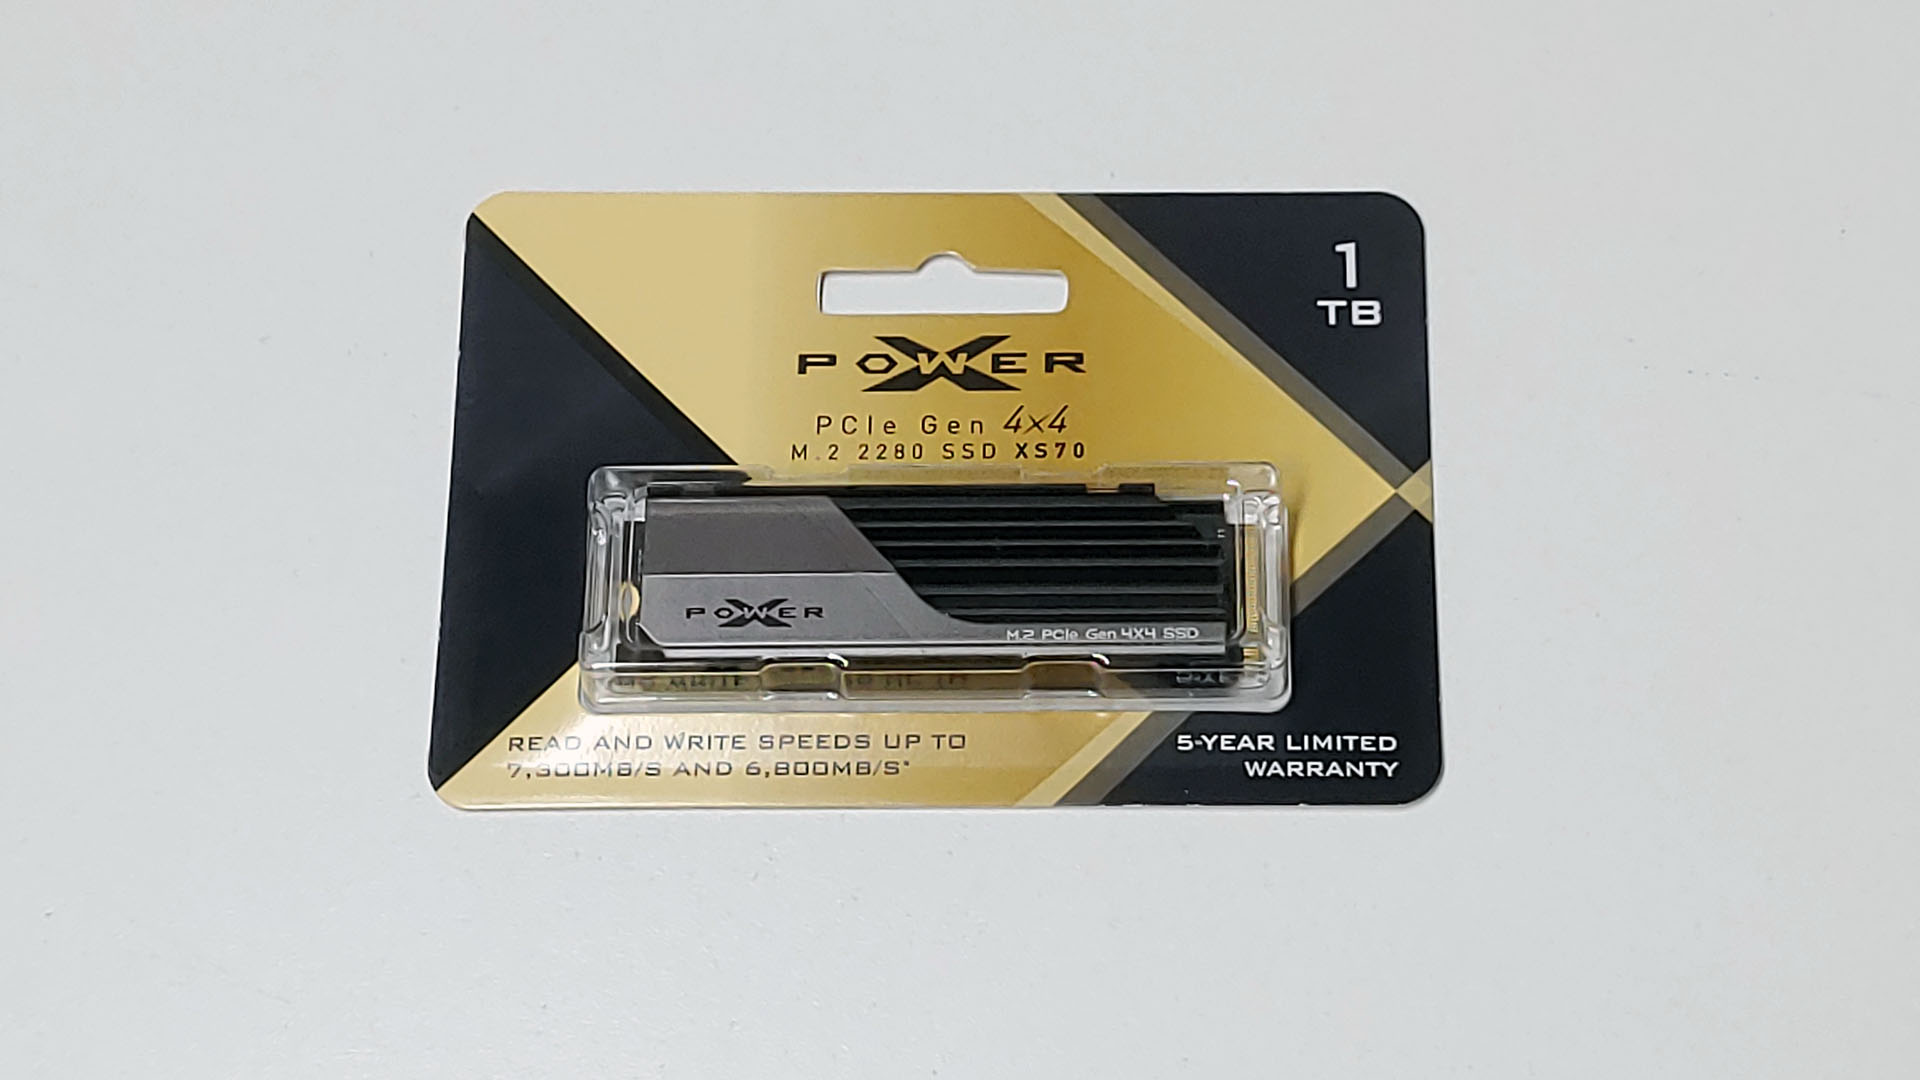 El SSD M.2 PCIe Gen 4x4 XS70 de Silicon Power - La Potencia que